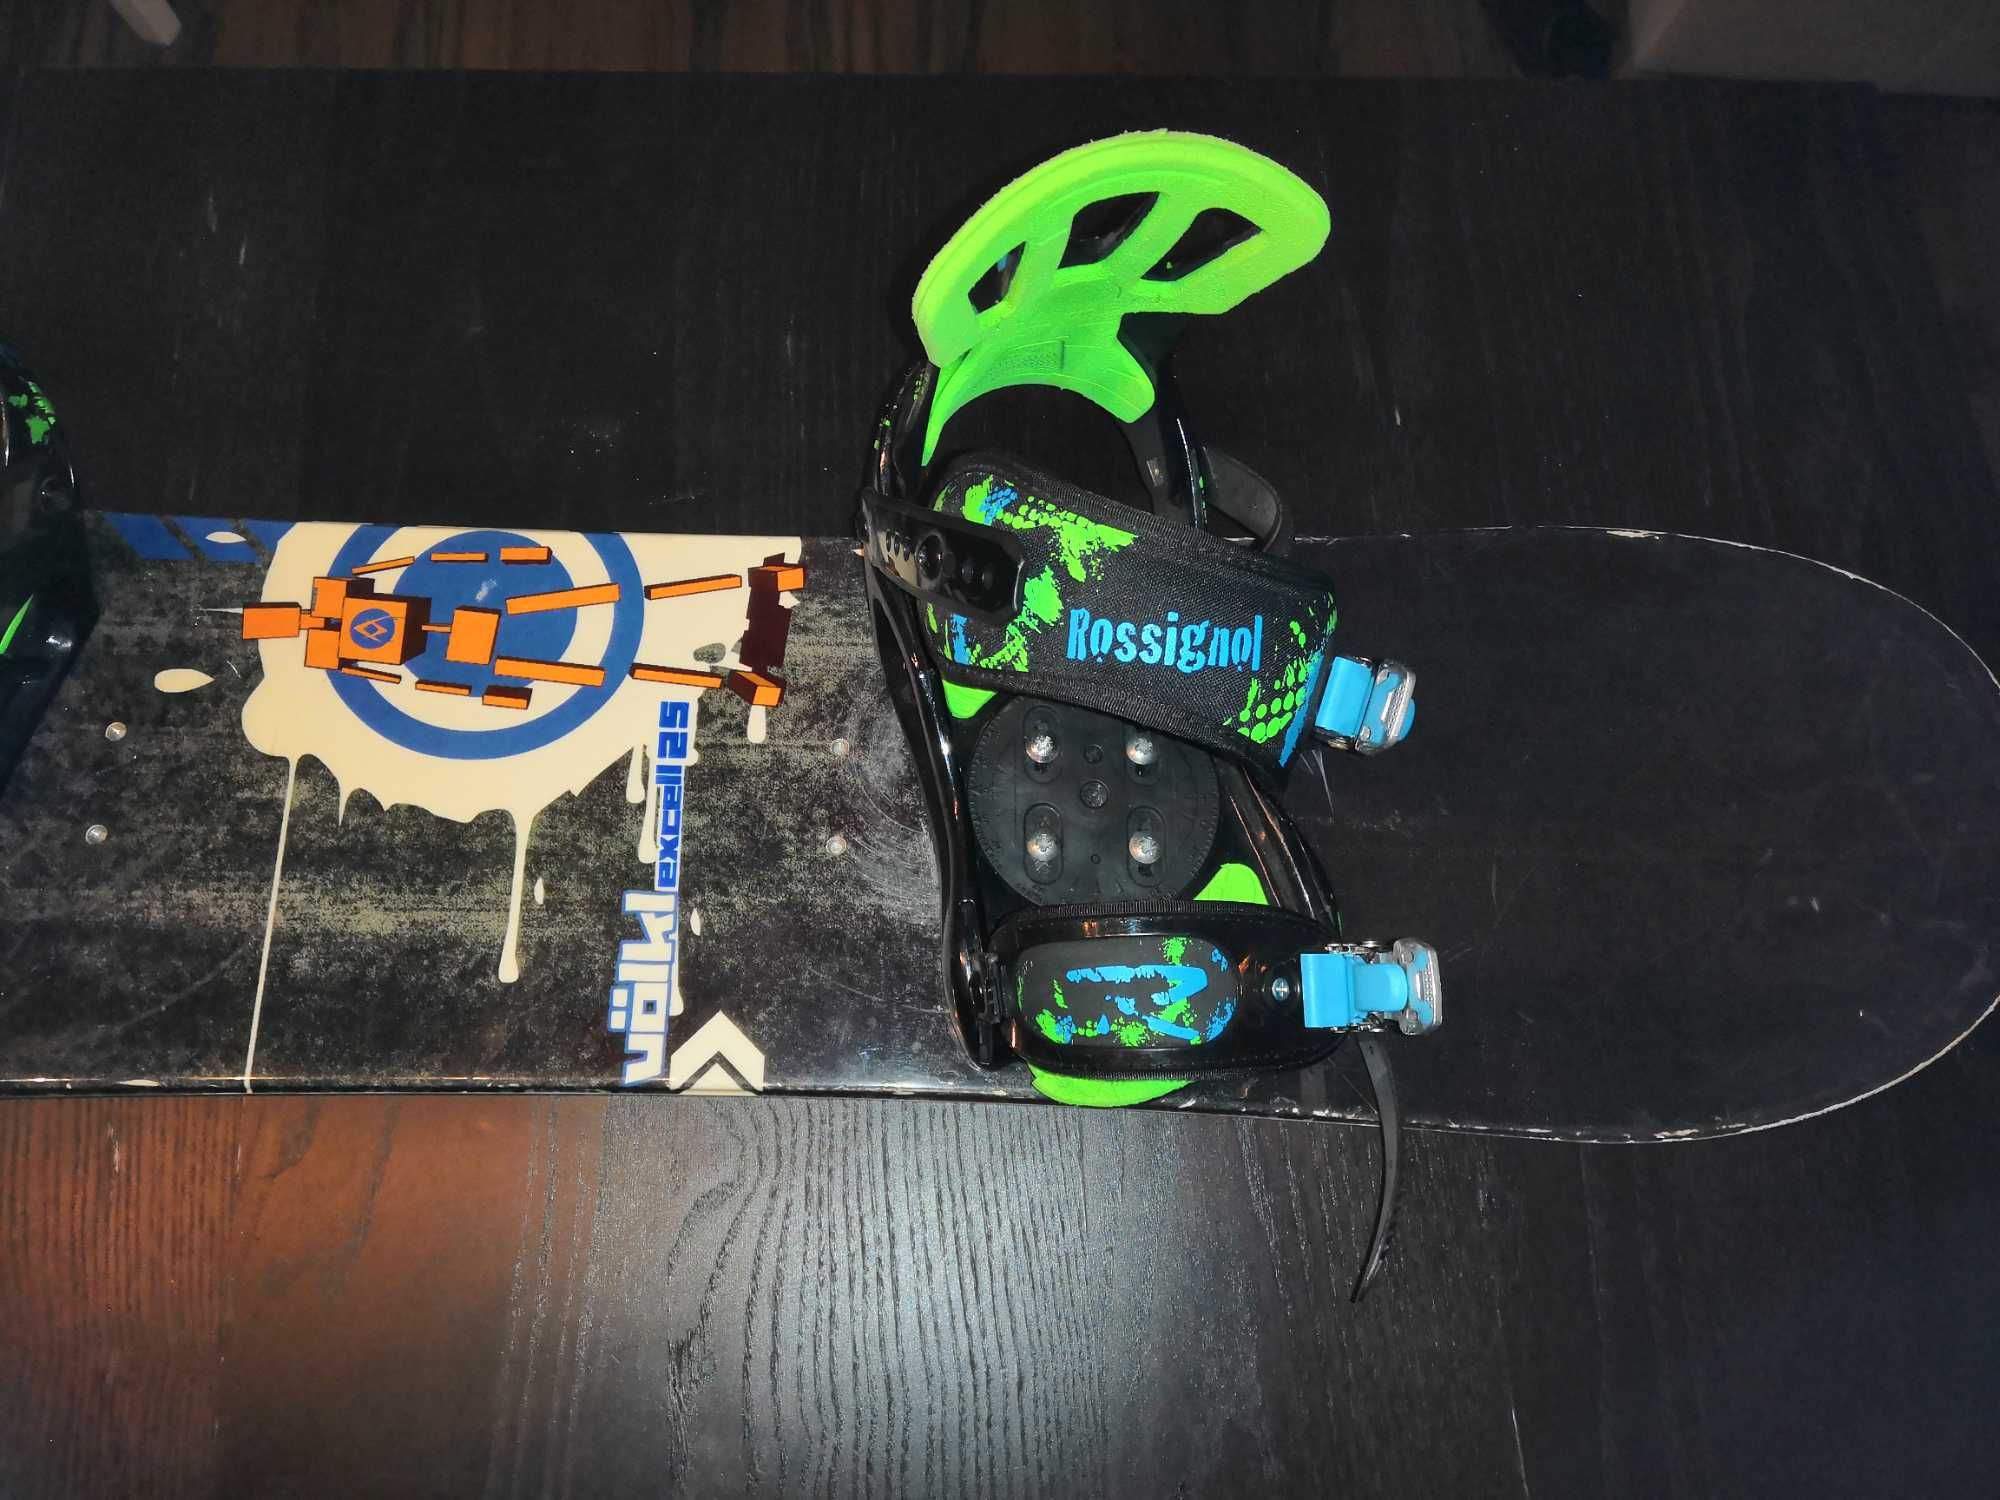 Deska snowboardowa dziecięca (122cm), wiązania i buty 24cm